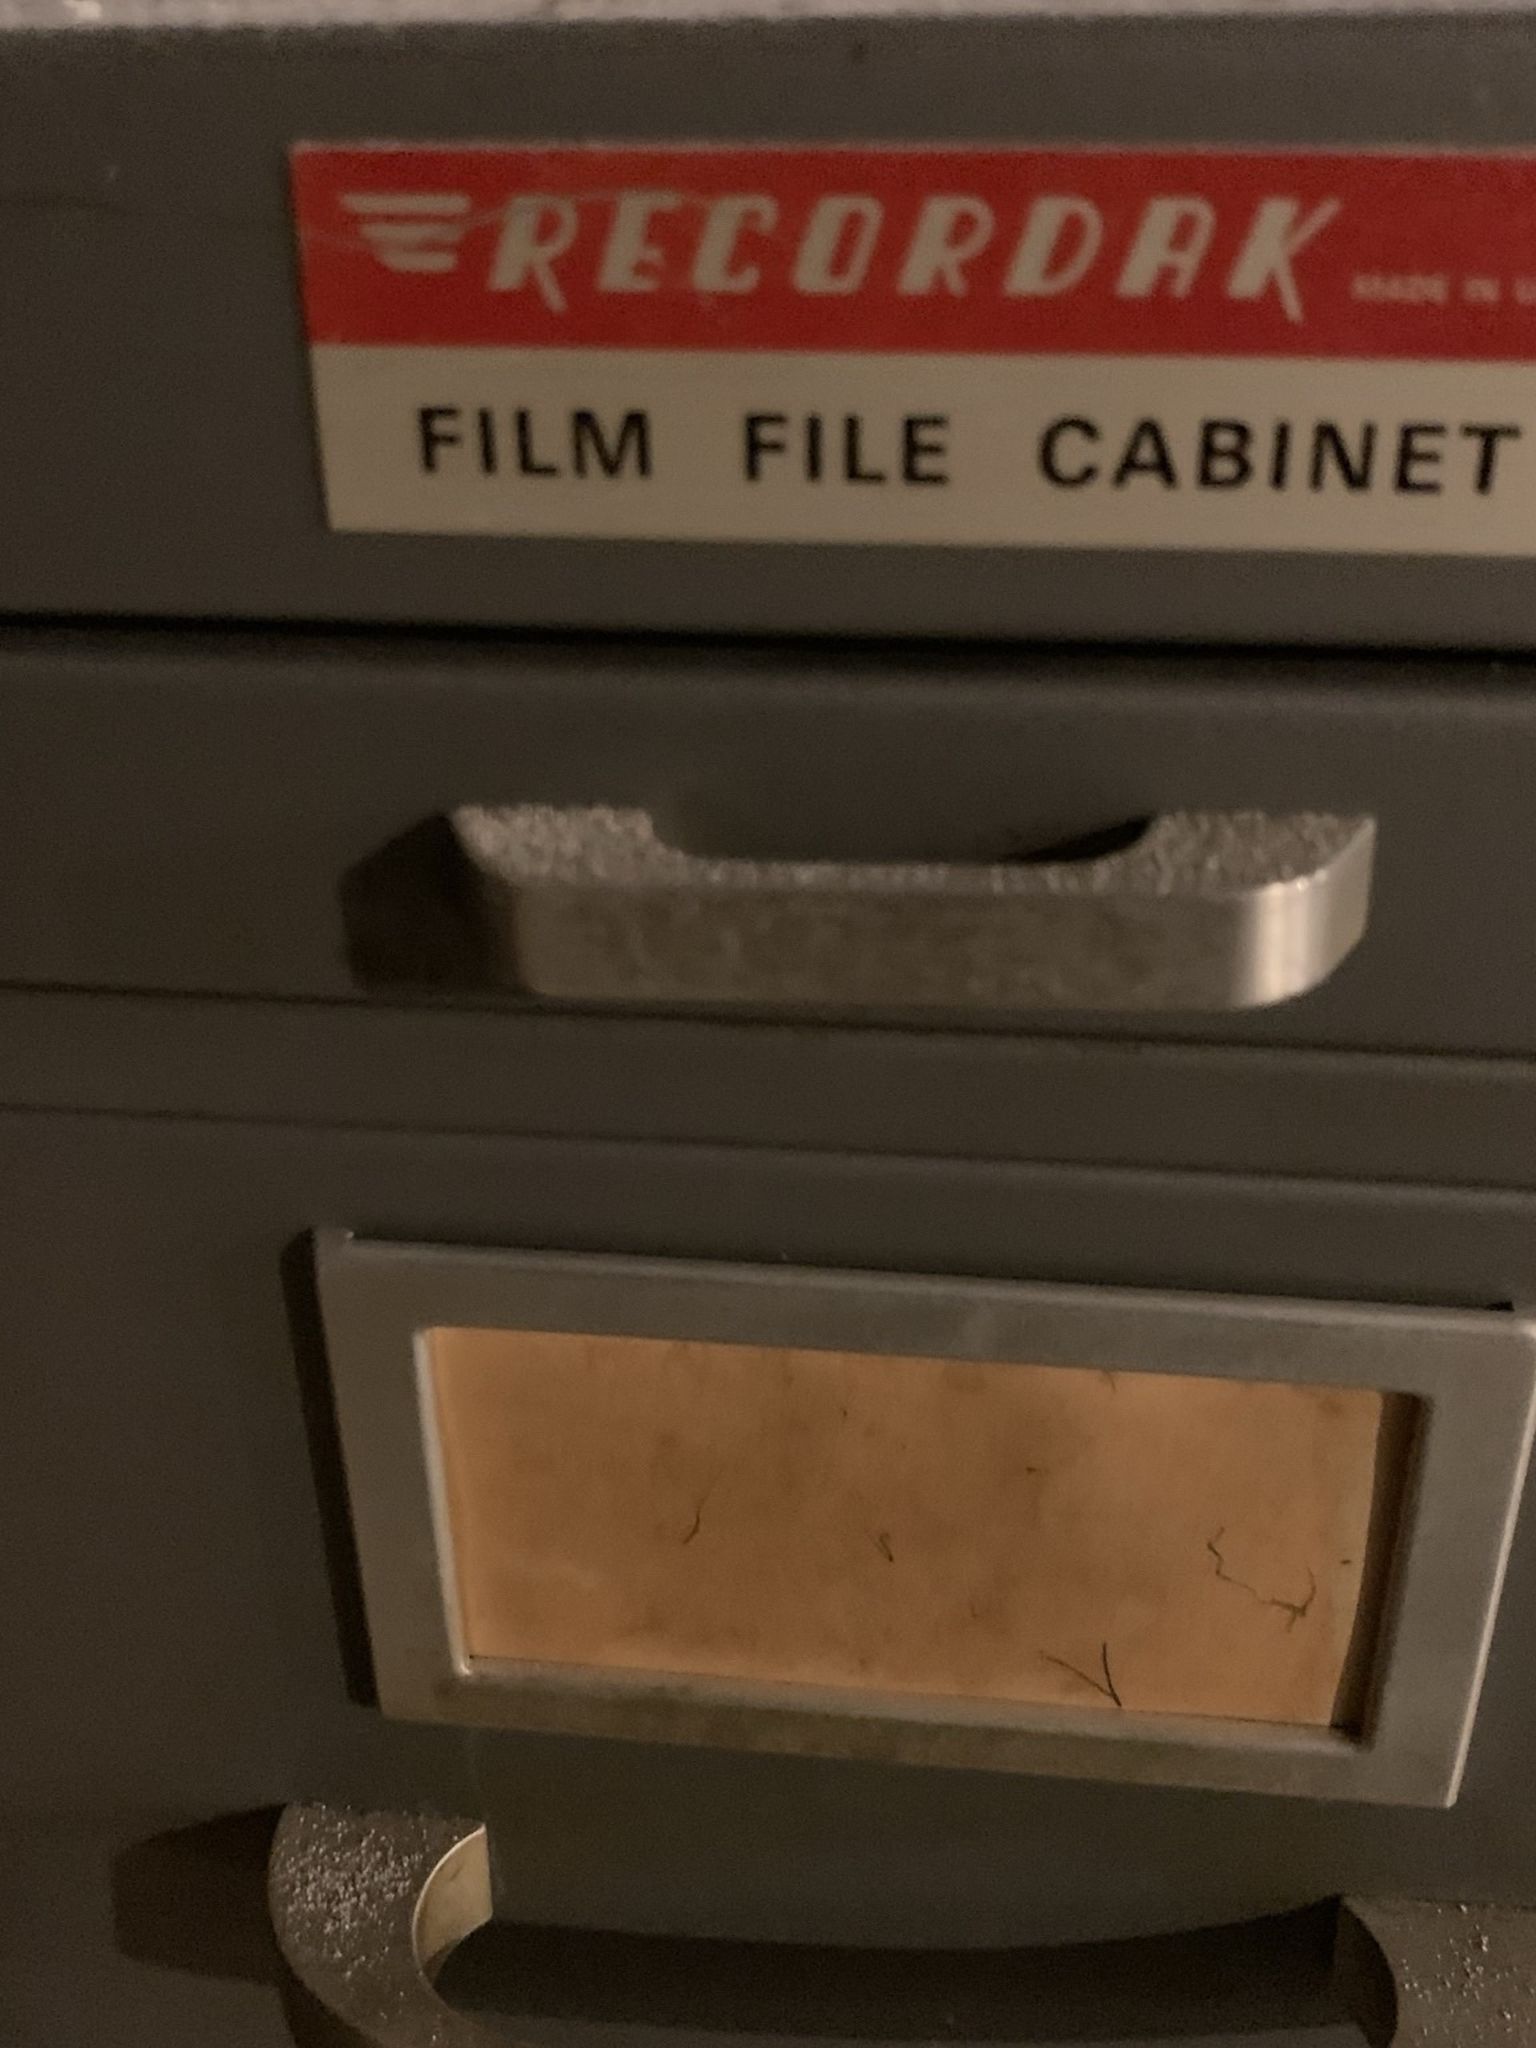 RECORDAX Film File Cabinets